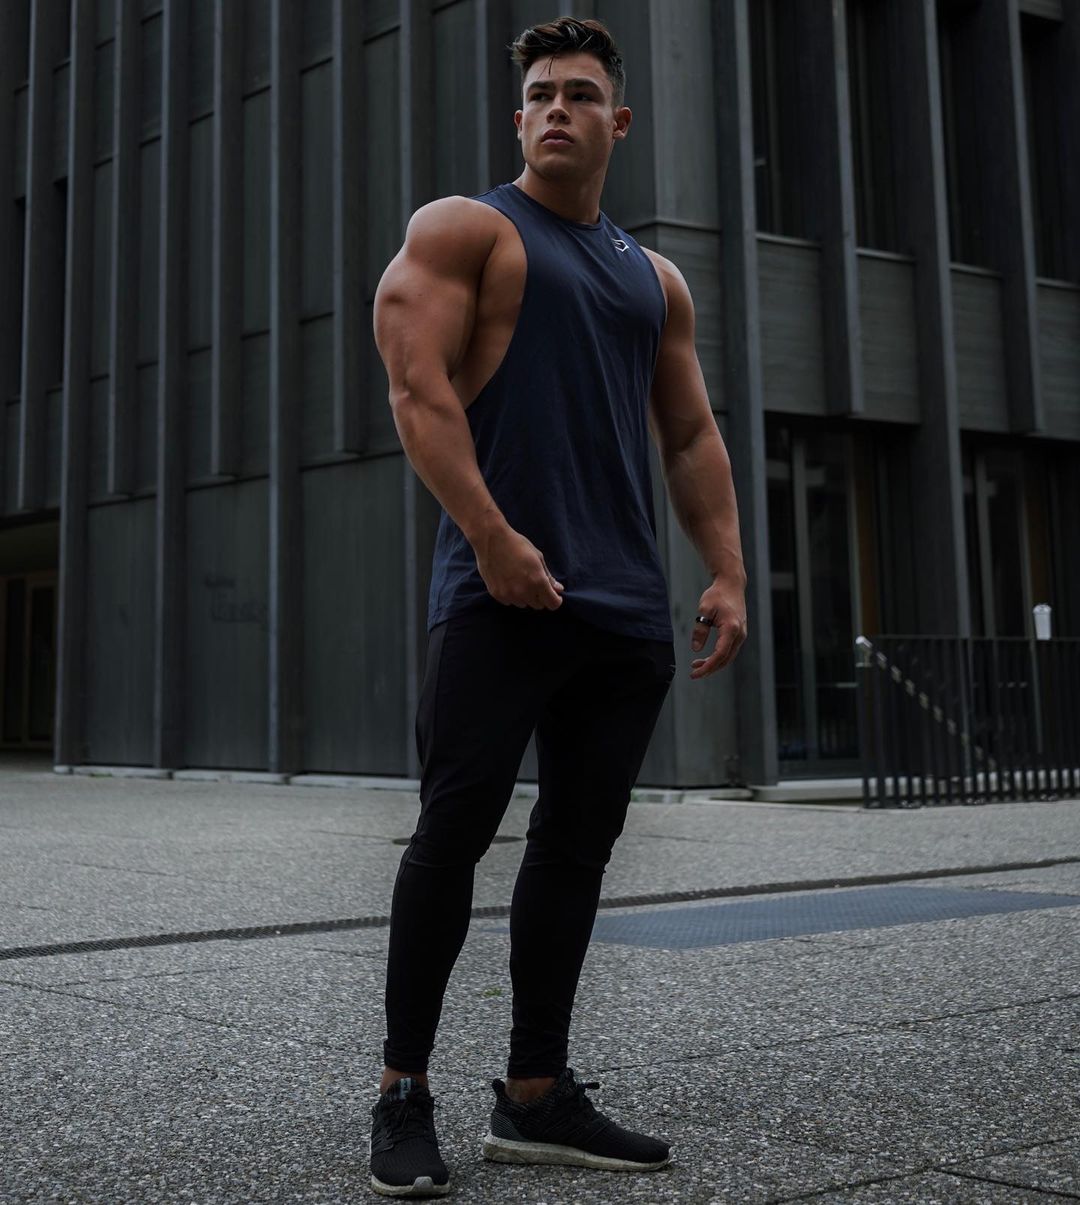 the beauty of male muscle: Gabriel